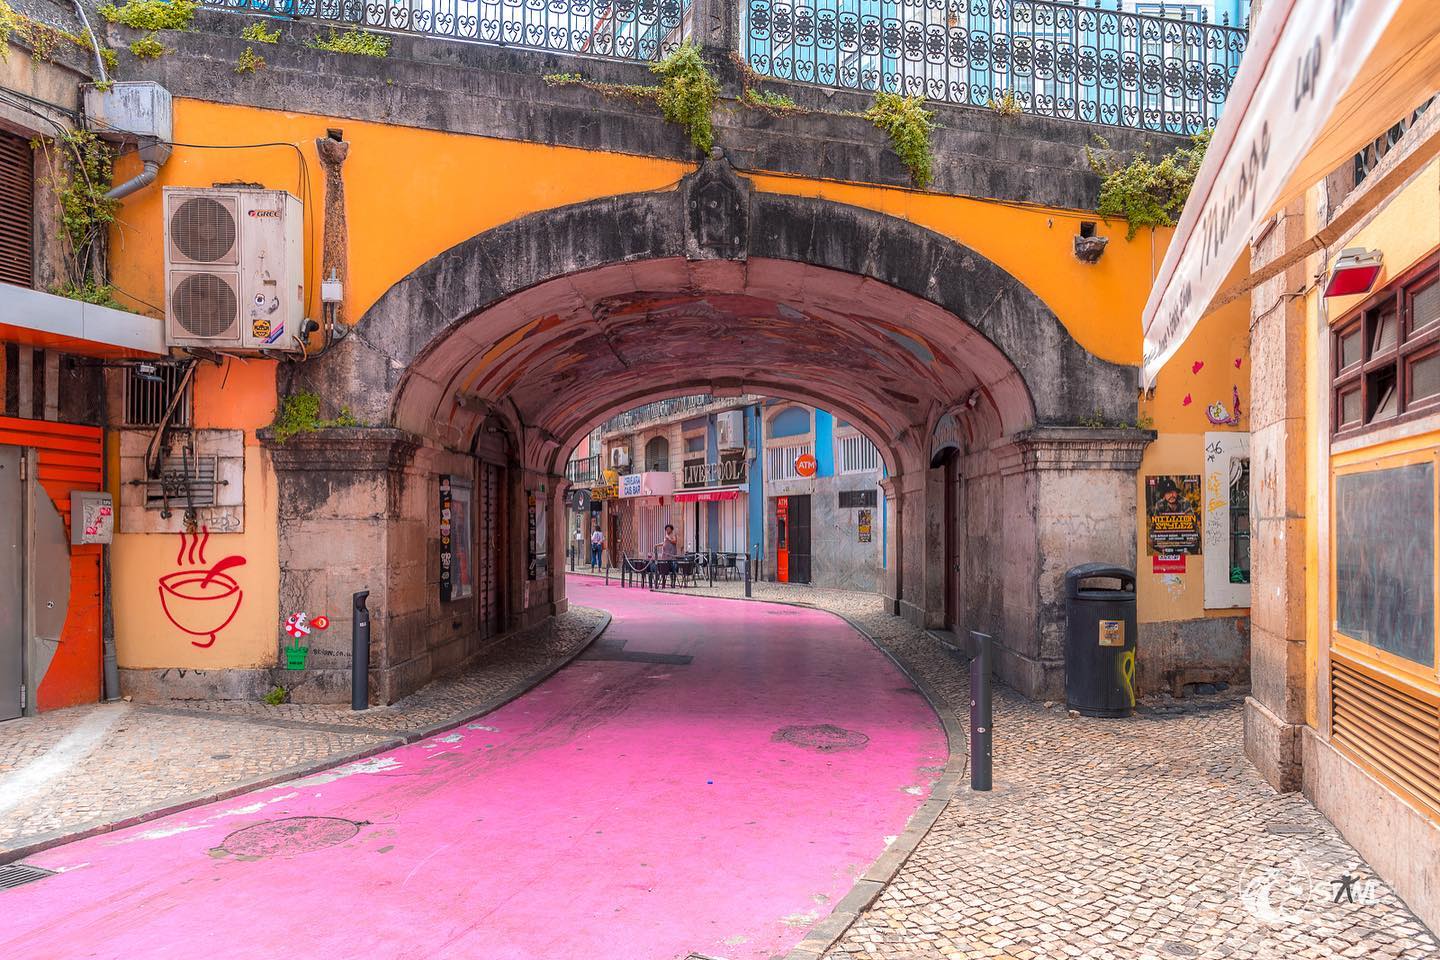 Pink Street #nikond750? #portugal??